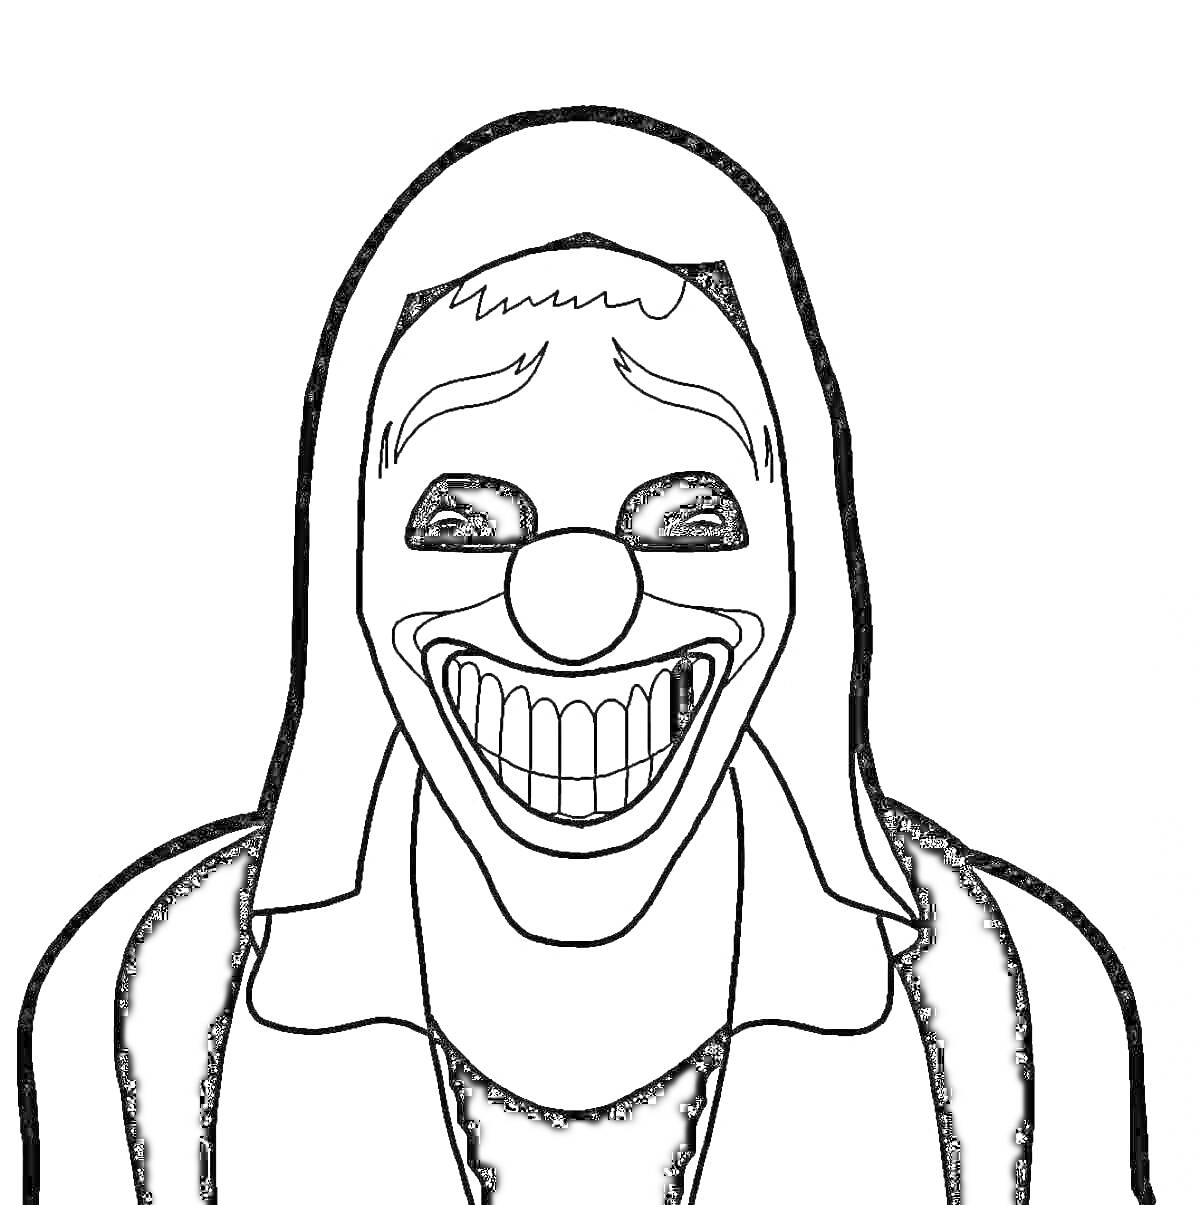 Раскраска Человек в капюшоне с маской клоуна, с чёткими прорисованными линиями на лице, большими глазами и широкой улыбкой.